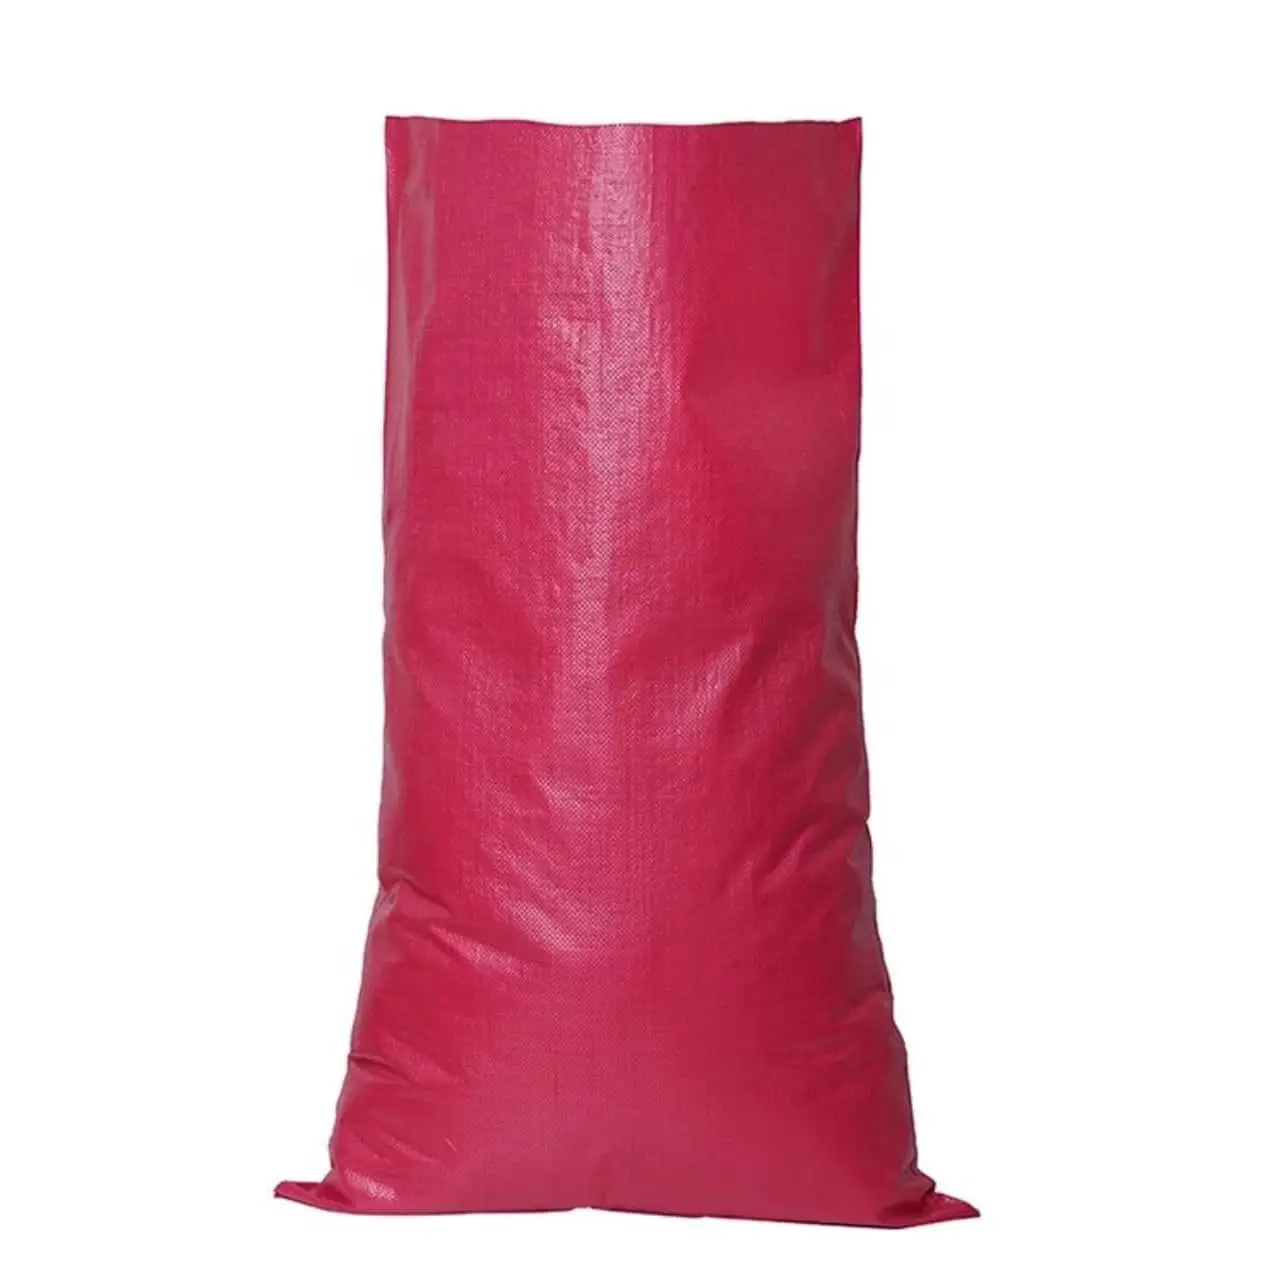 Alta qualidade material plástico pp saco tecido são wdiely utilizados em fertilizantes areia farinha de arroz e feijão saco FIBC